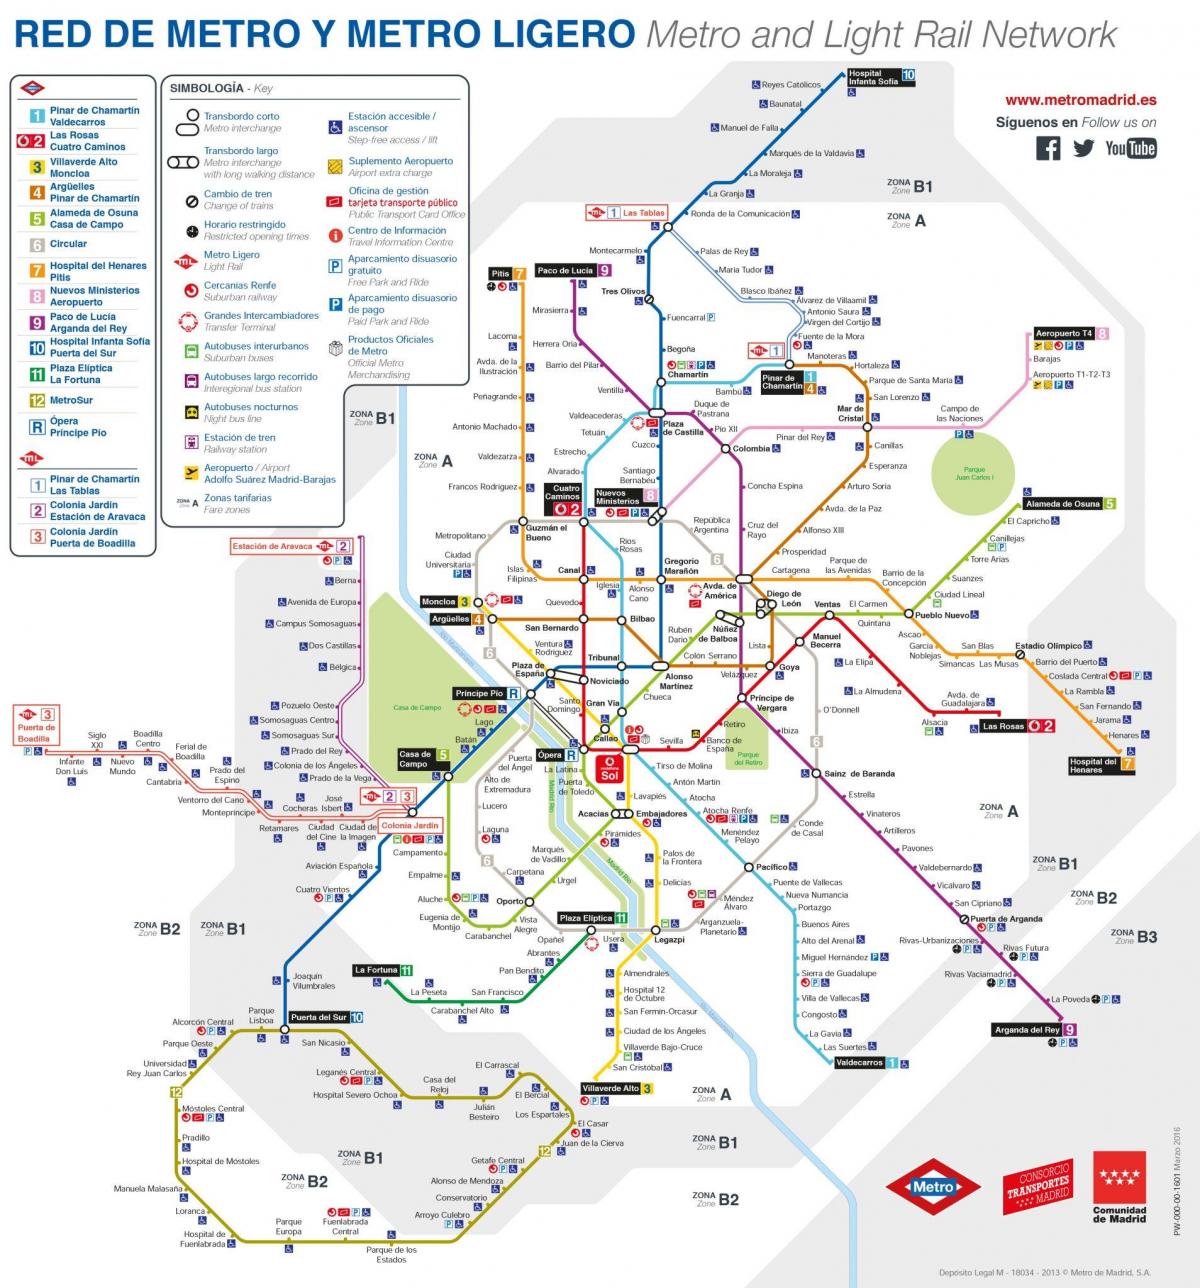 kort over Madrid offentlig transport